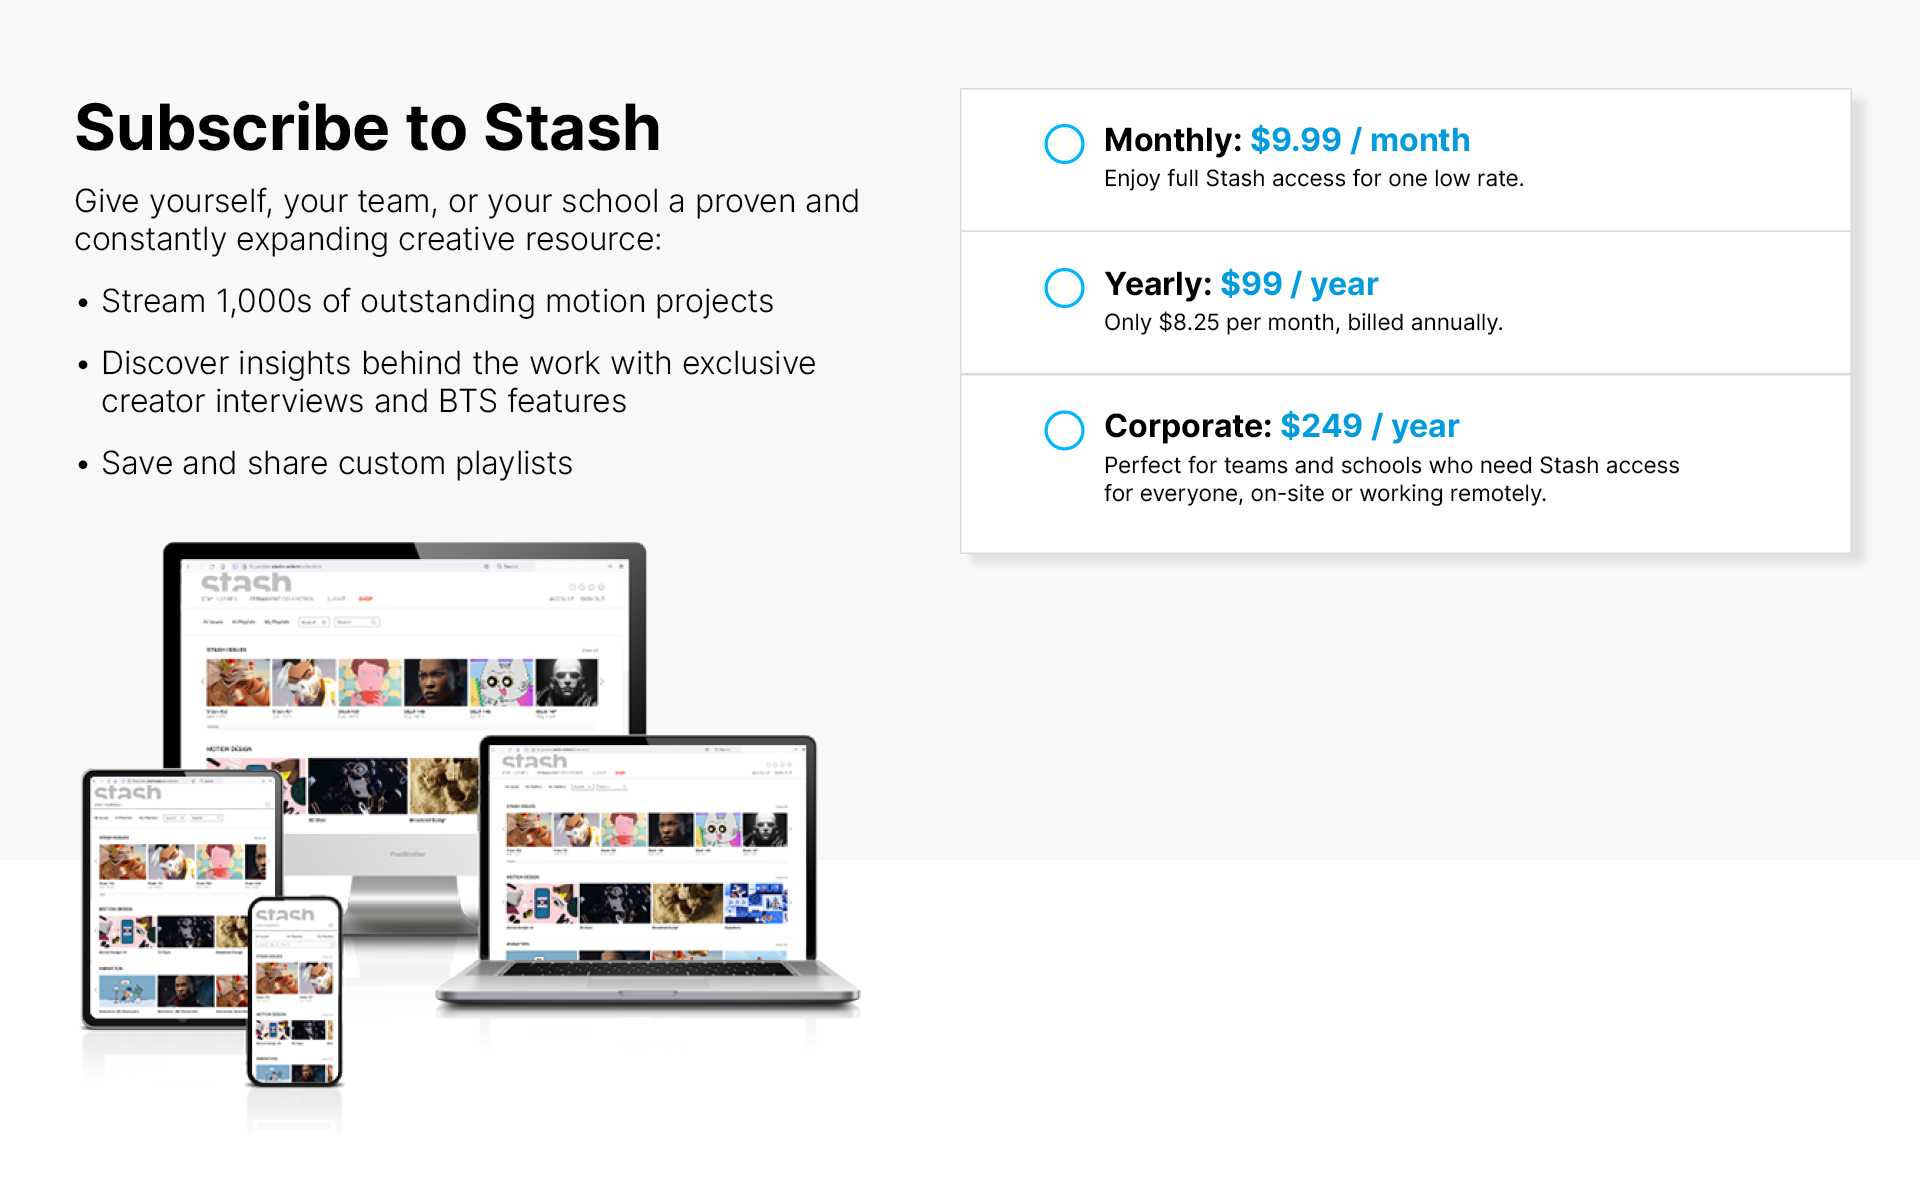 Subscribe to Stash options | STASH MAGAZINE